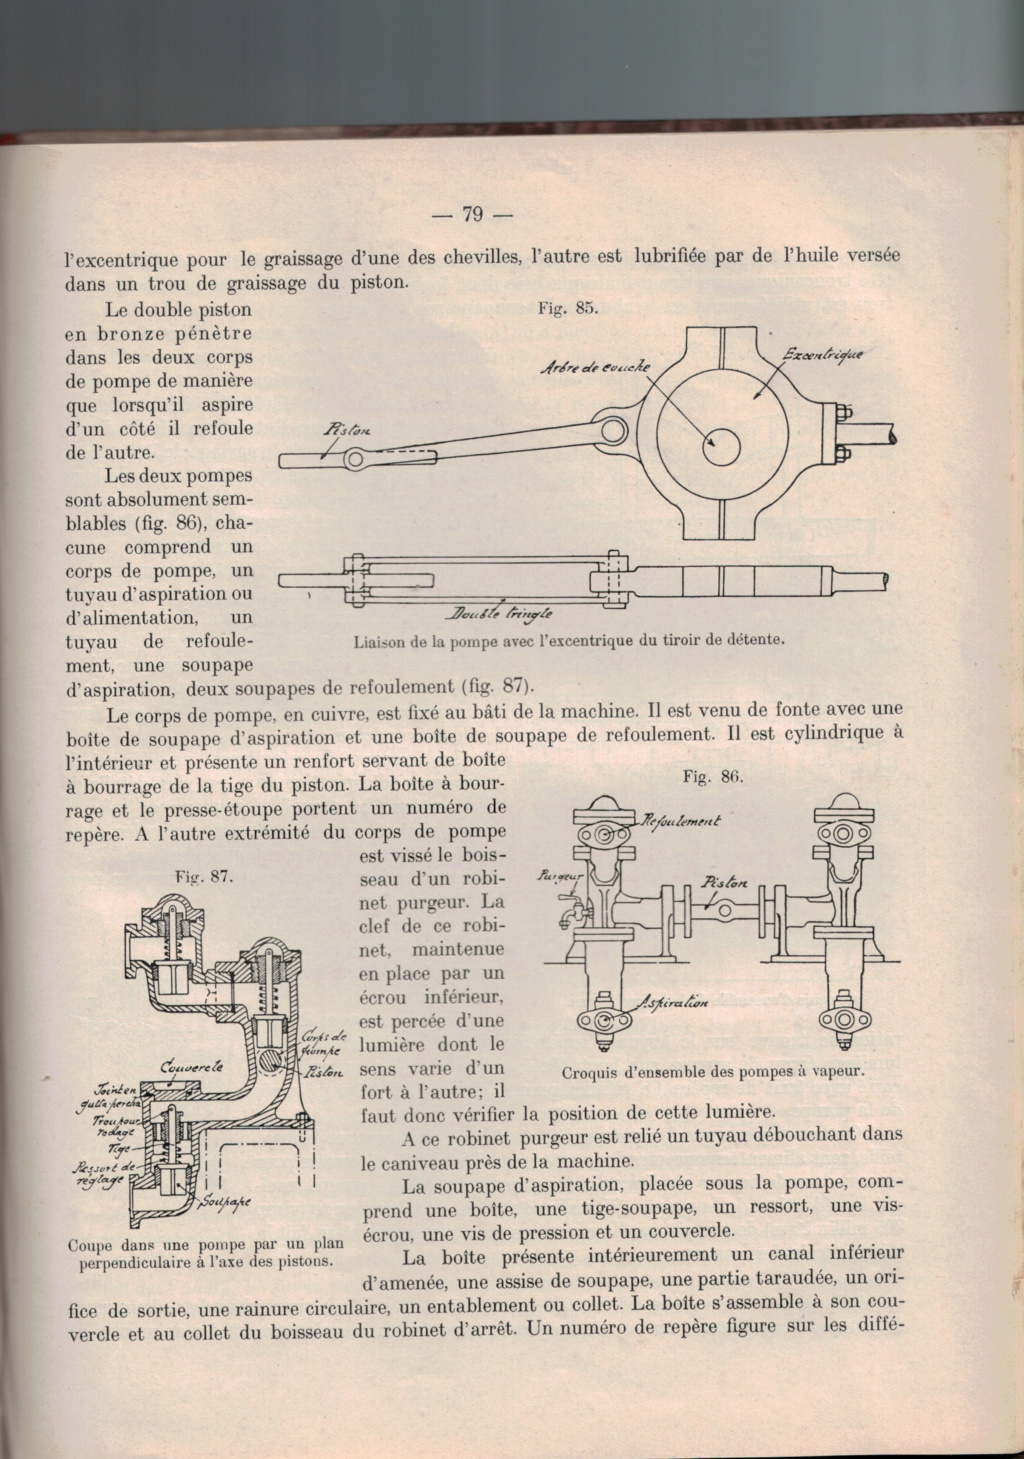 MACHINE A VAPEUR DES FORTS BELGES DE LA MEUSE EN 1914 - Page 12 68510